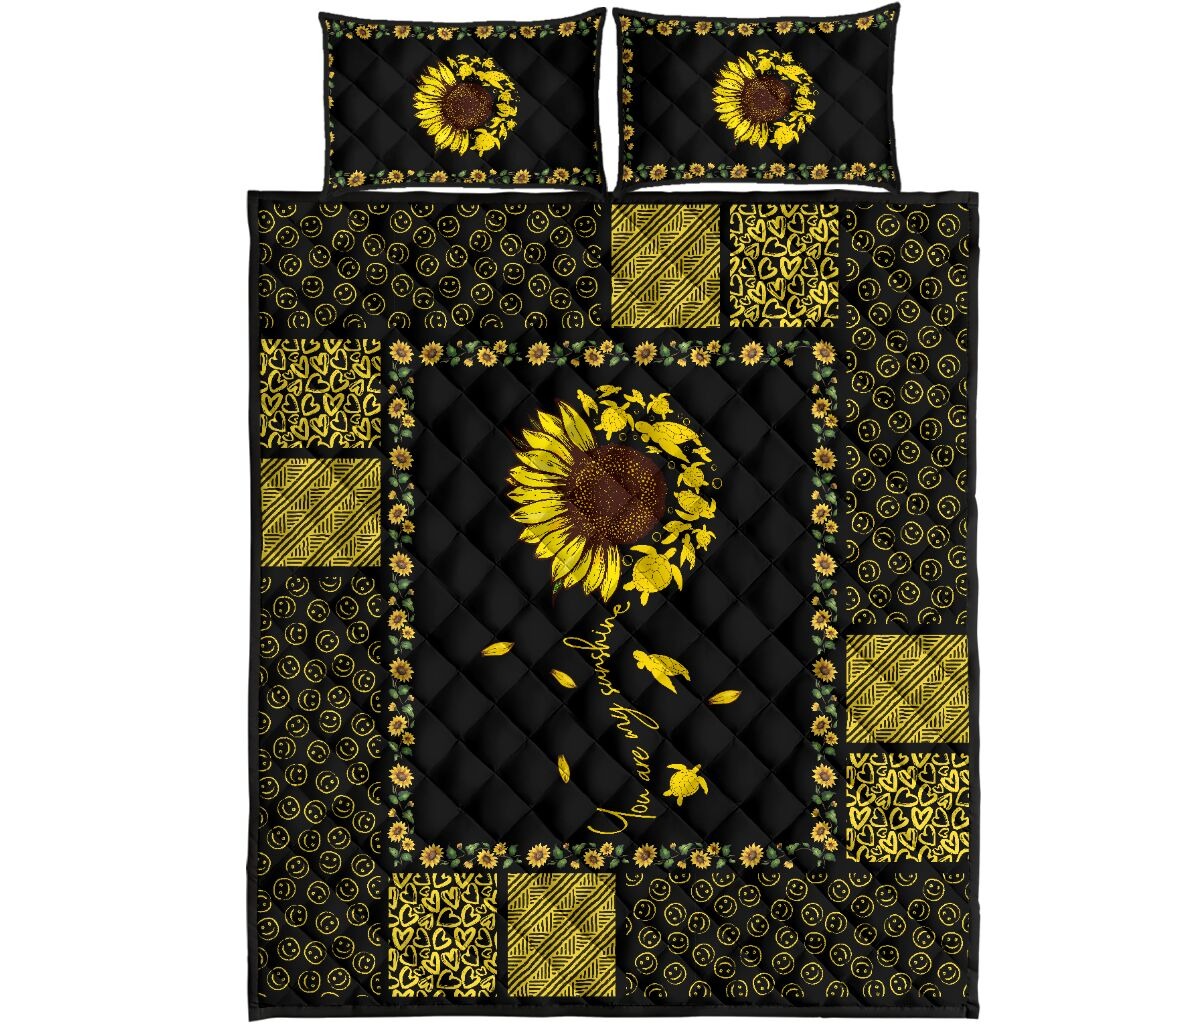 Sunflower sunshine turtle quilt bedding set4